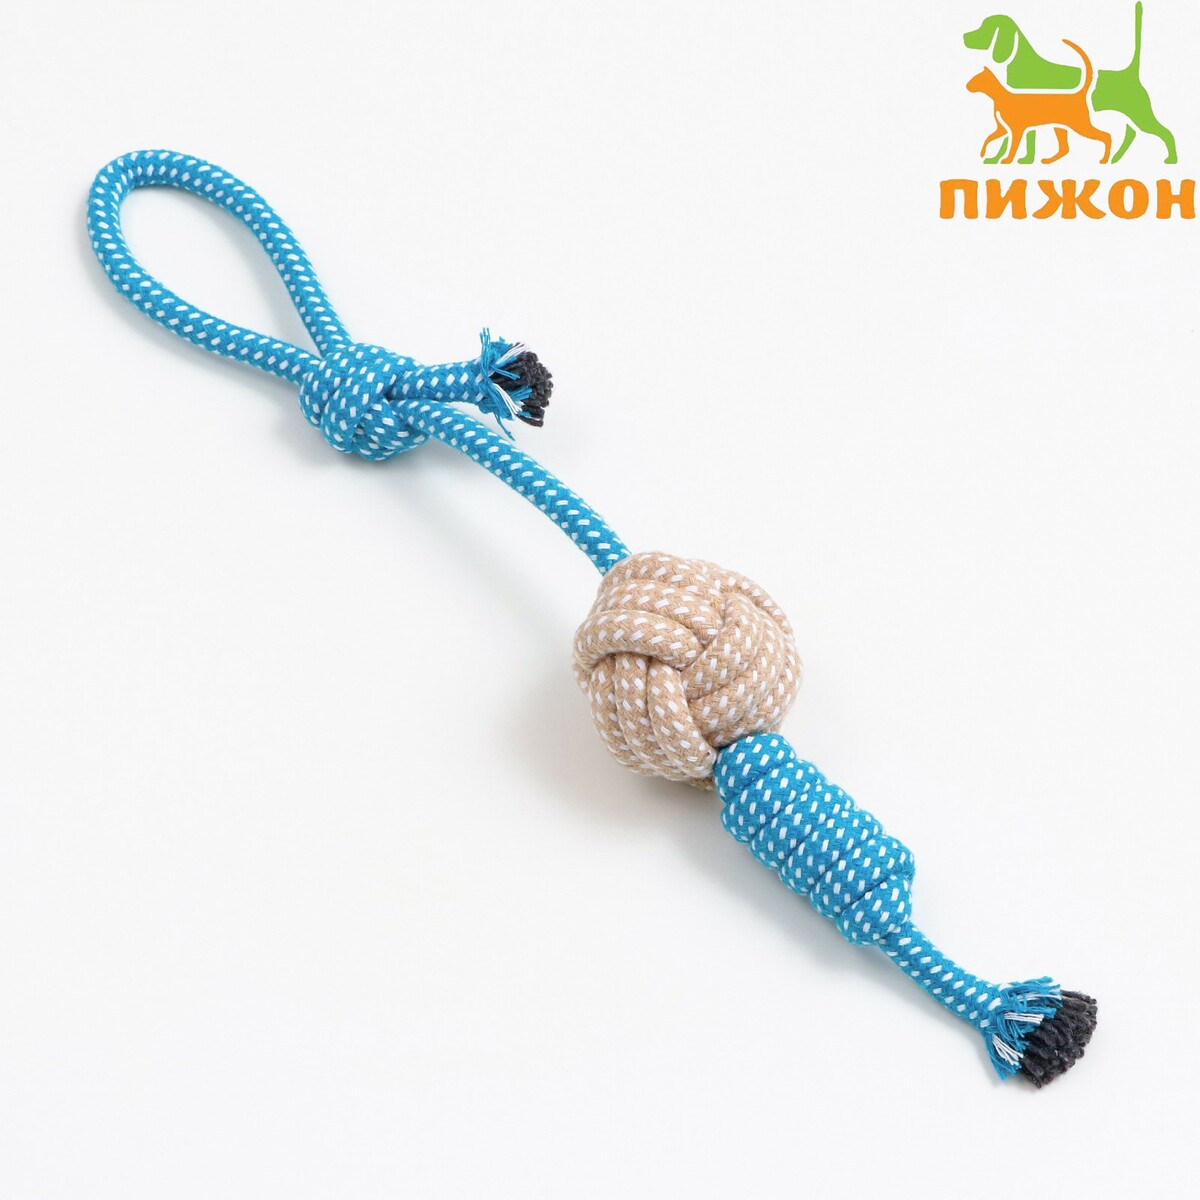 Игрушка канатная плетеная с ручкой, до 40 см, 90 г, синяя/желтая/белая игрушка тренировочная канатная